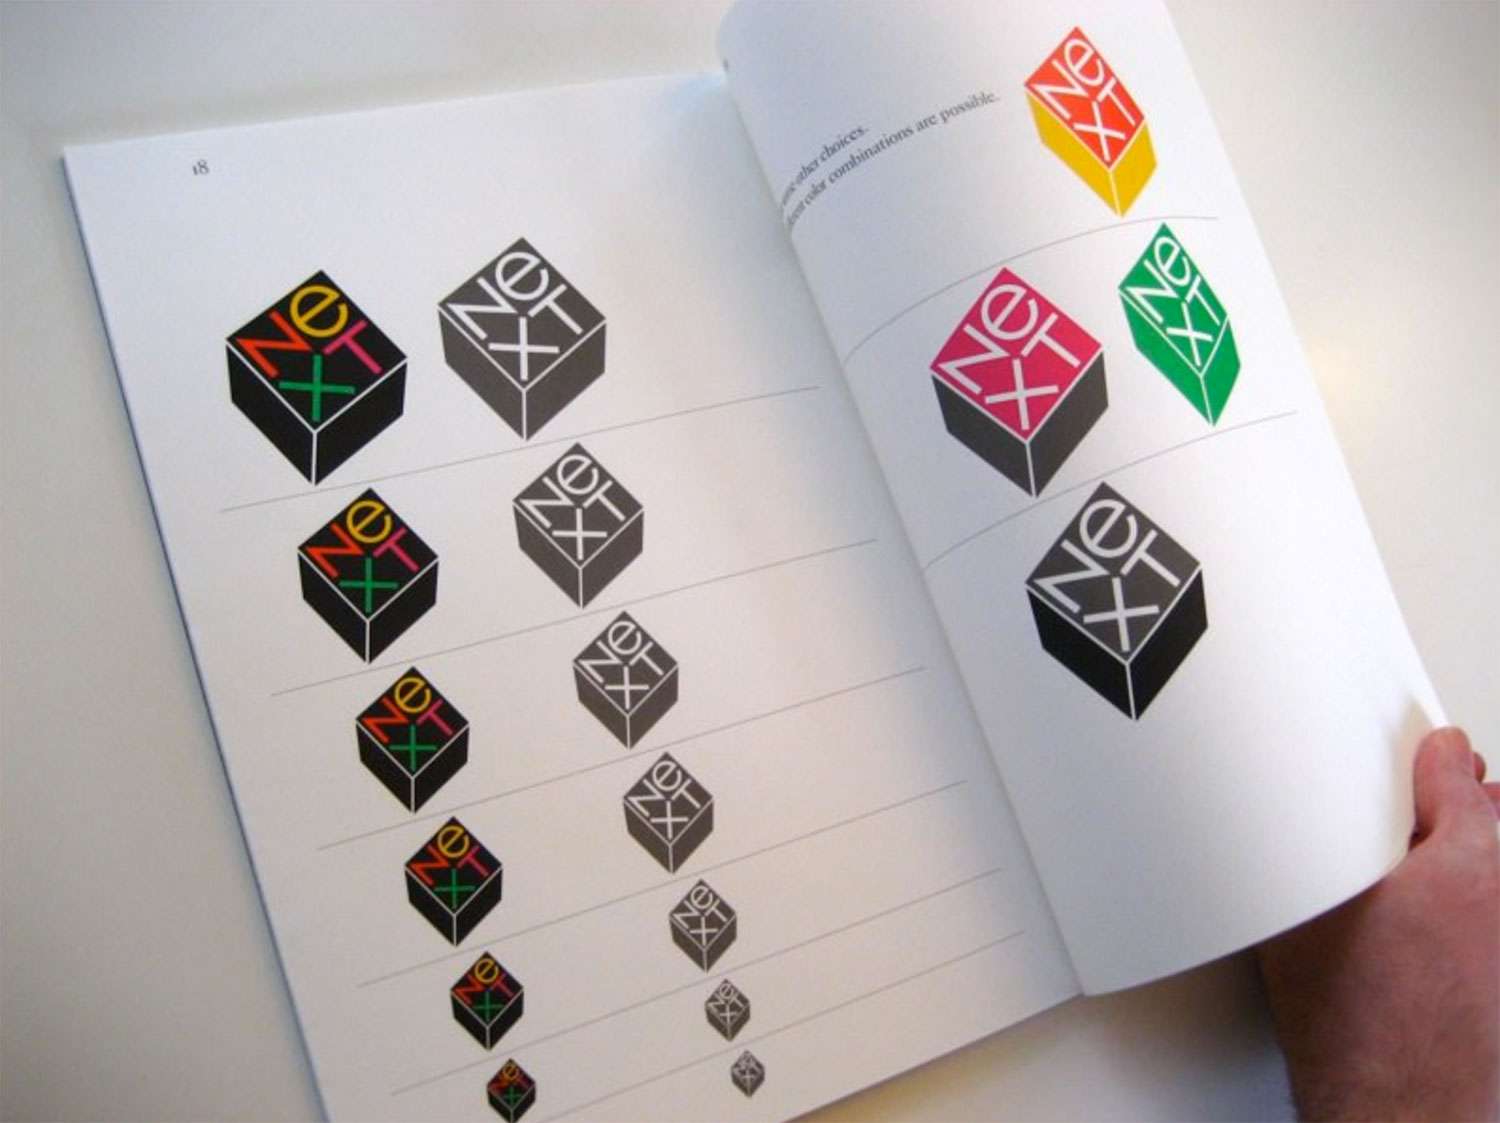 En 1986, Steve Jobs a payé 100 000 dollars à Paul Rand pour créer une identité visuelle pour son entreprise informatique. Rand a développé un livre de proposition unique de 100 pages pour le logo NeXT qui a guidé le lecteur étape par étape à travers le processus conceptuel jusqu'au résultat final.